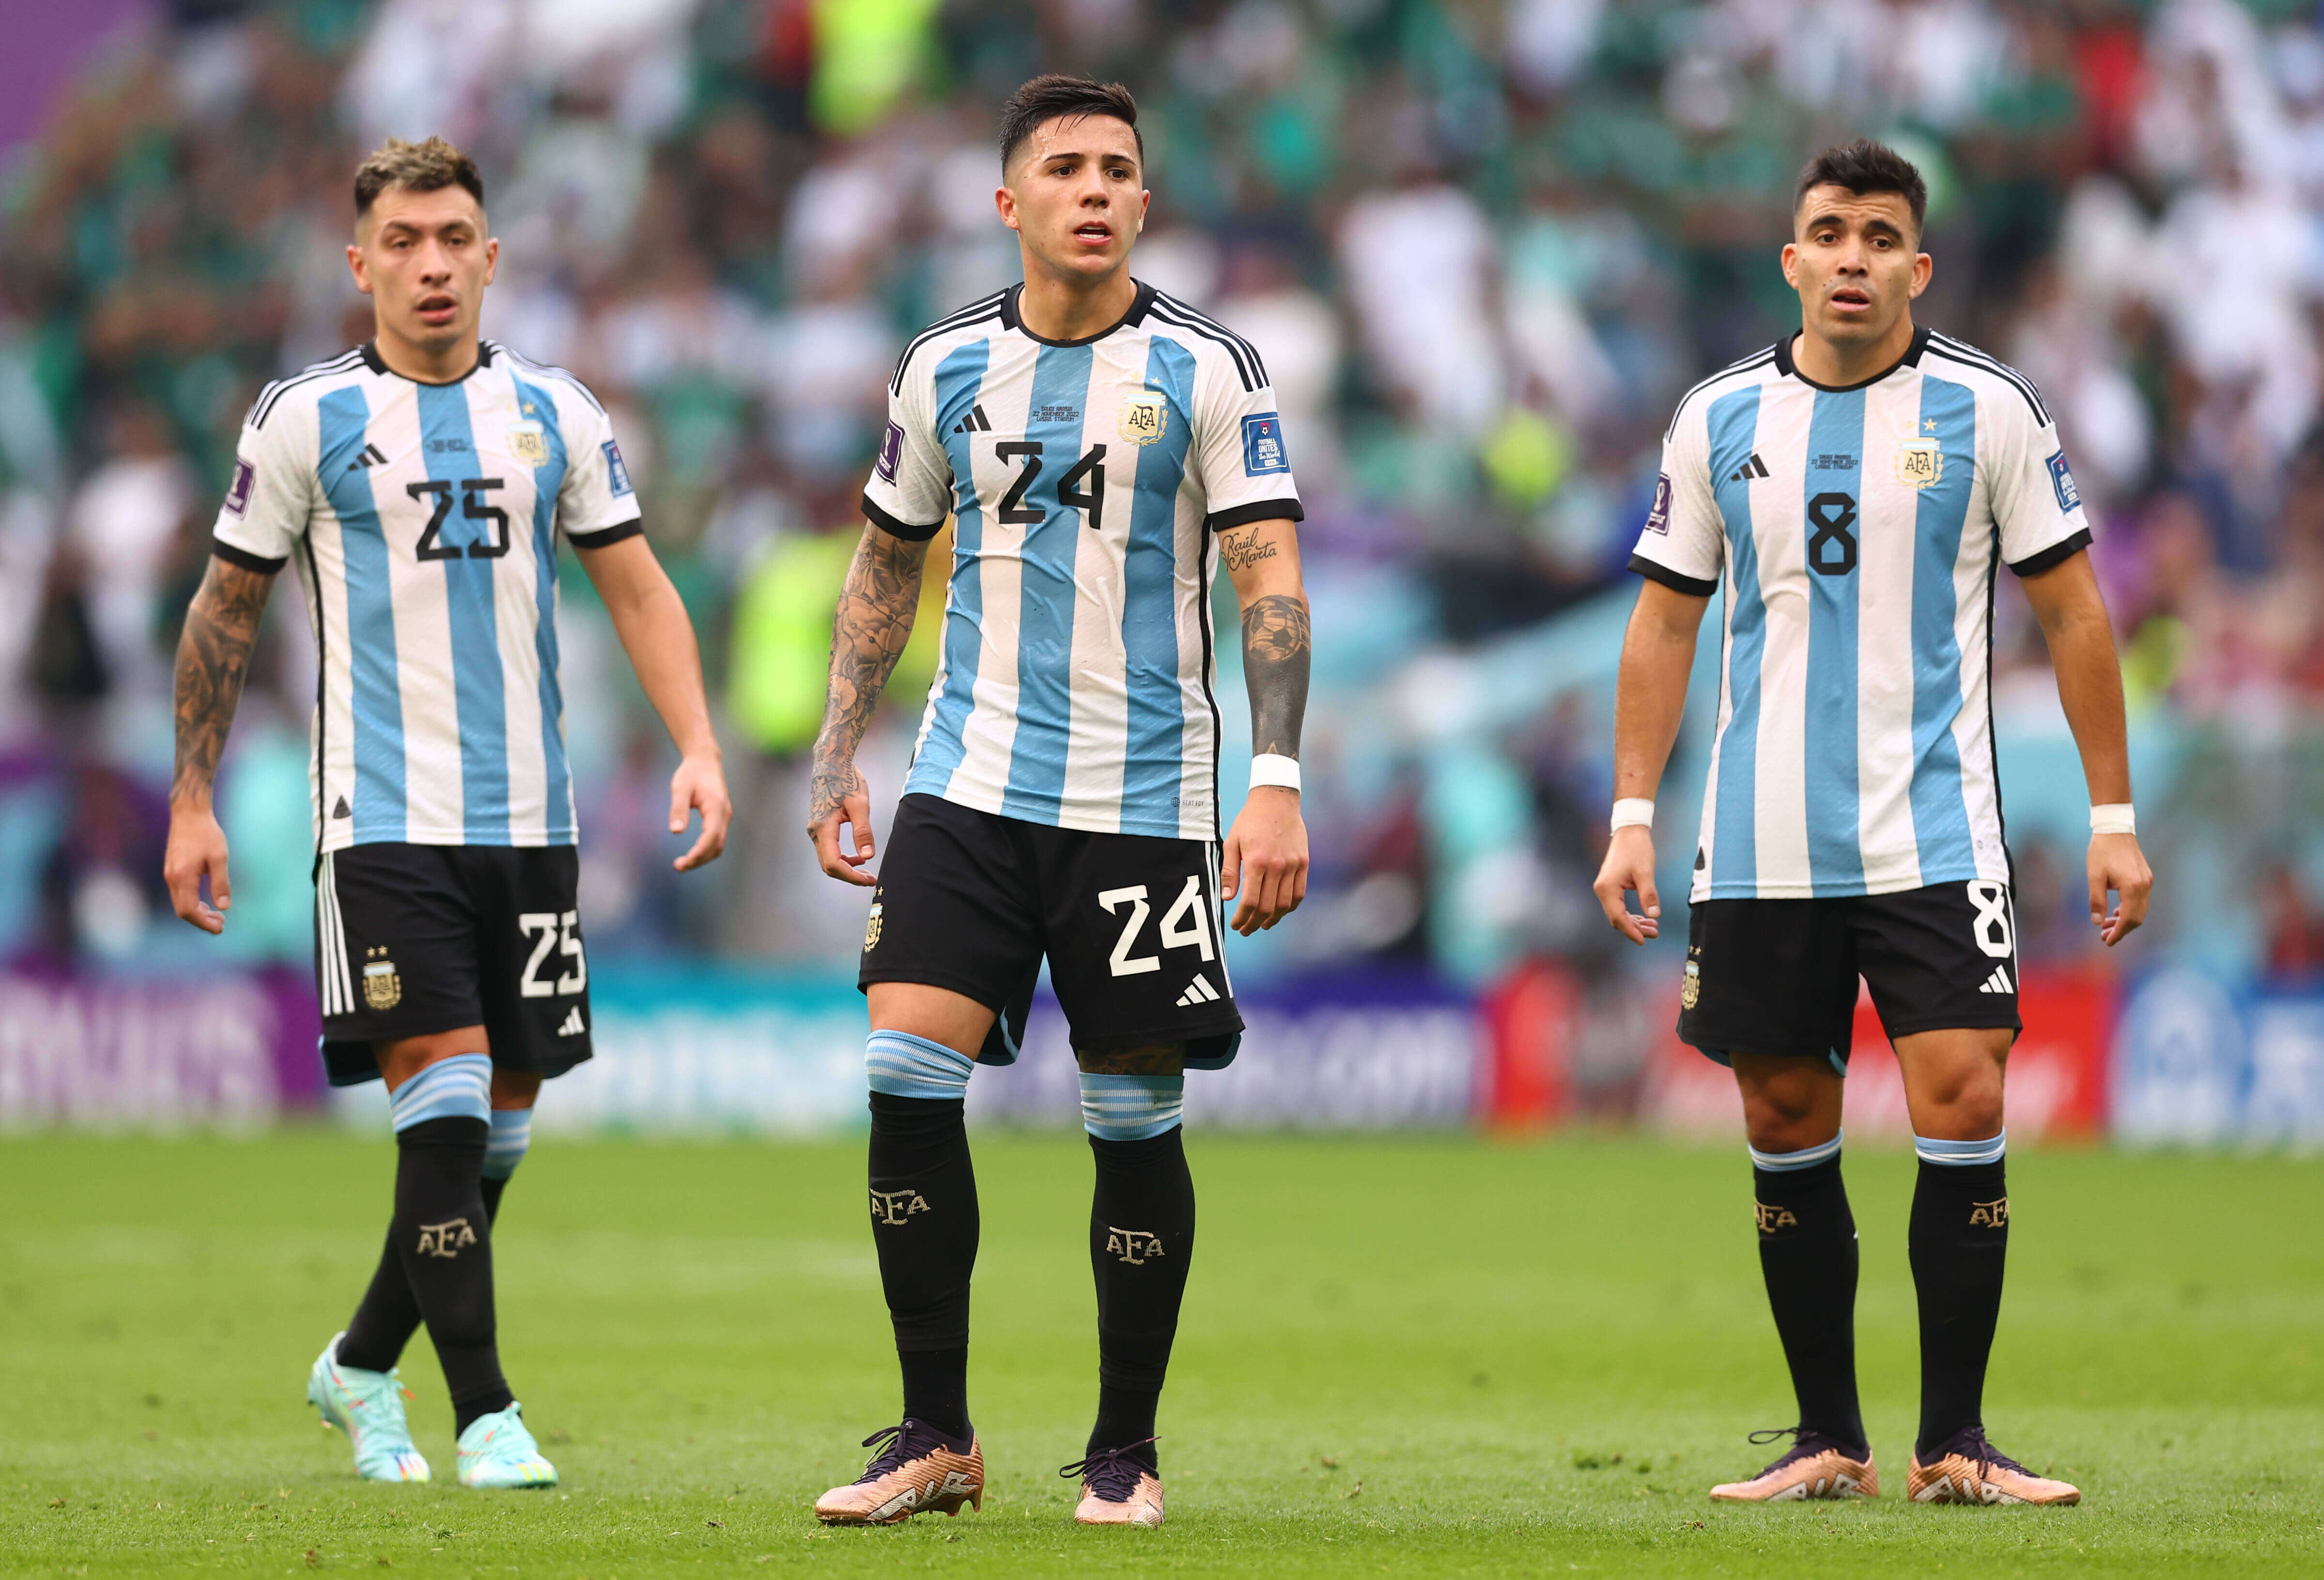 Baums WM-Analyse Das ist Argentiniens große Schwäche in der Abwehr Sports Illustrated